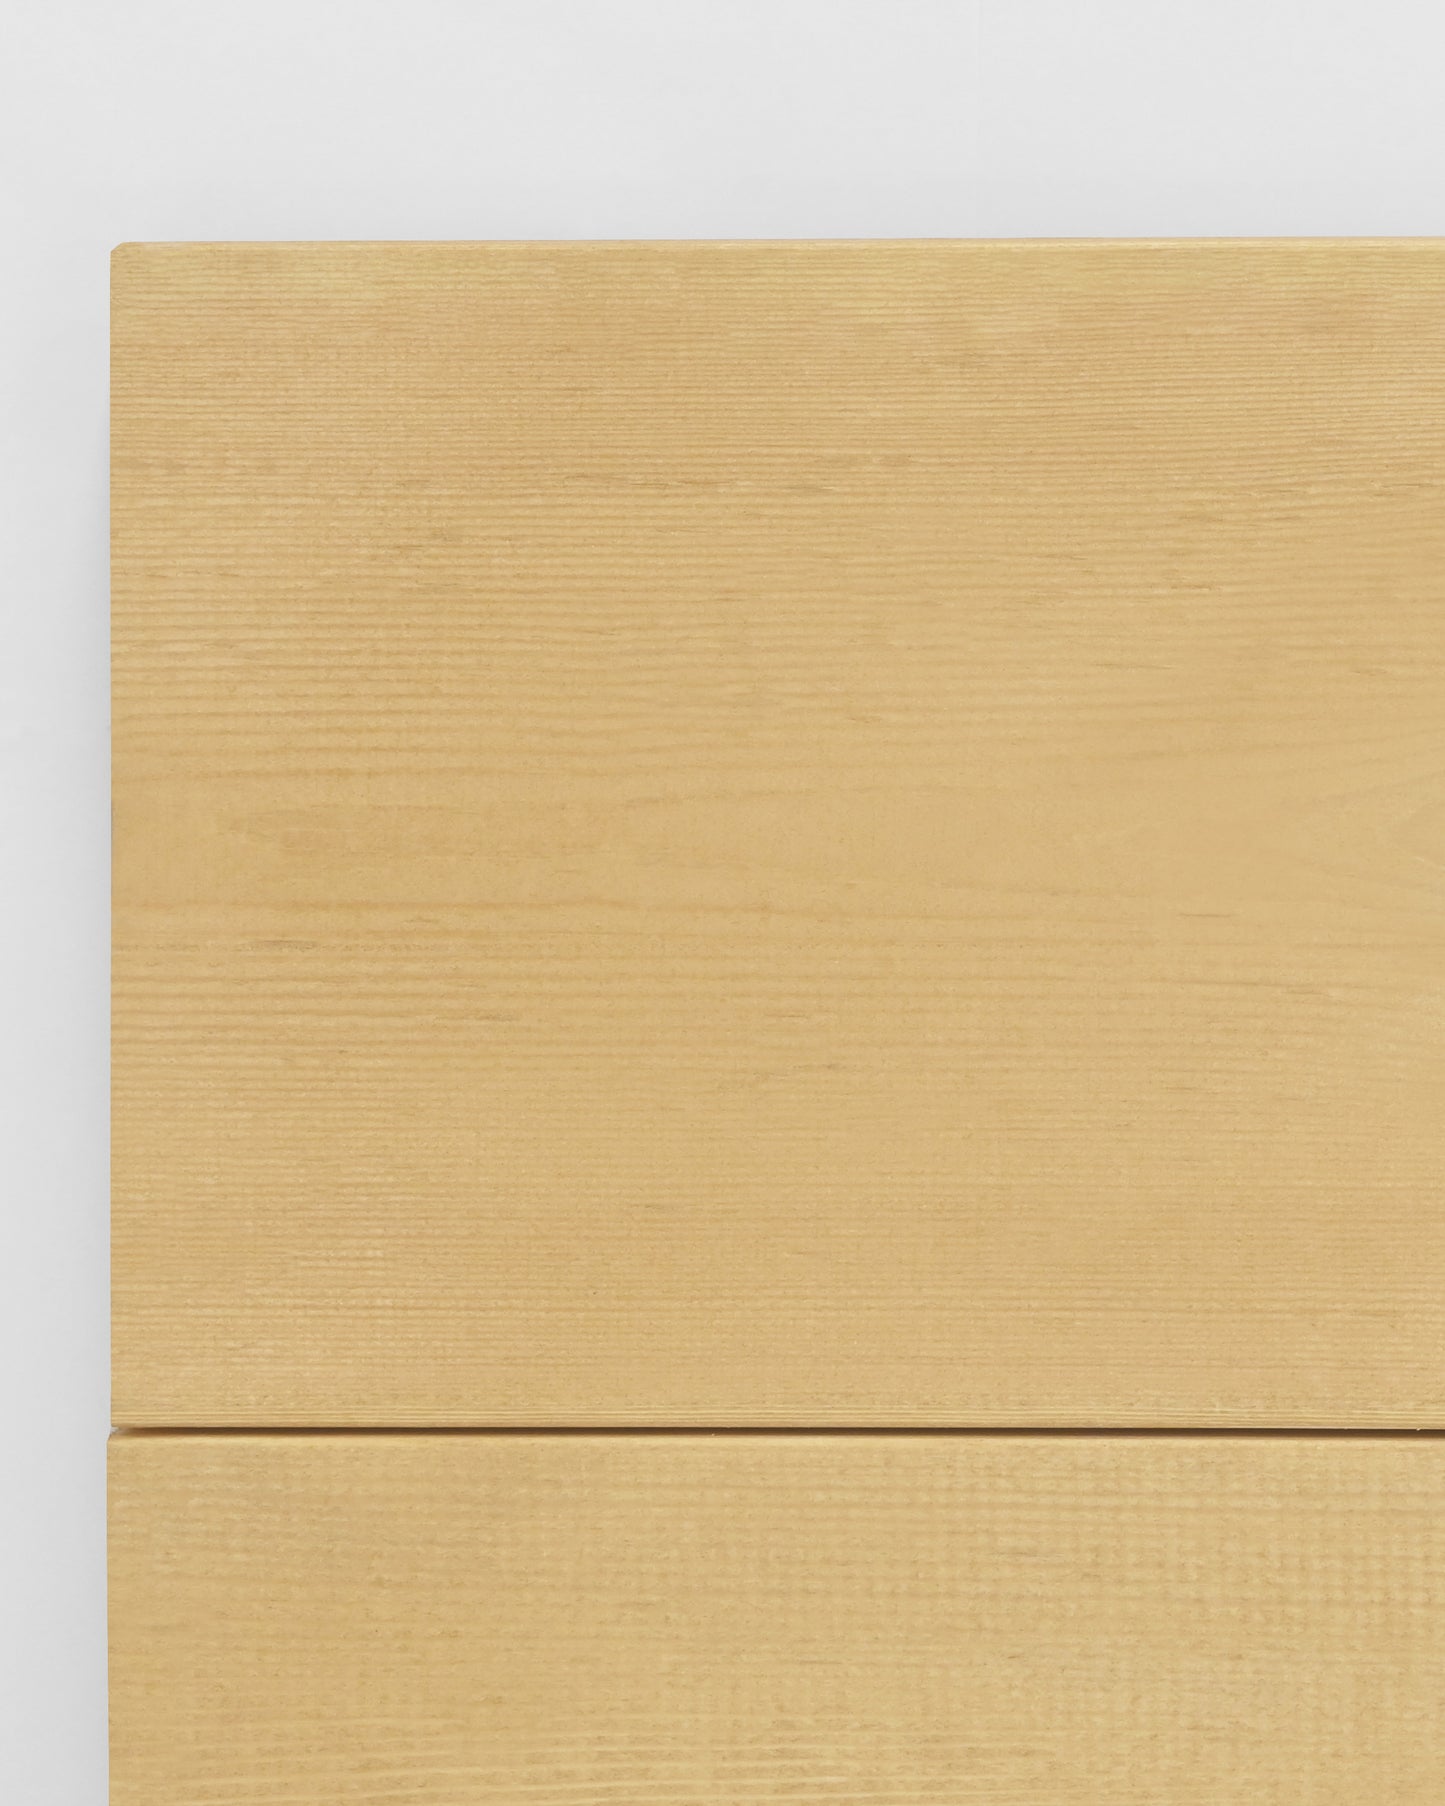 Cabecero de madera maciza en tono olivo de 180x80cm - DECOWOOD